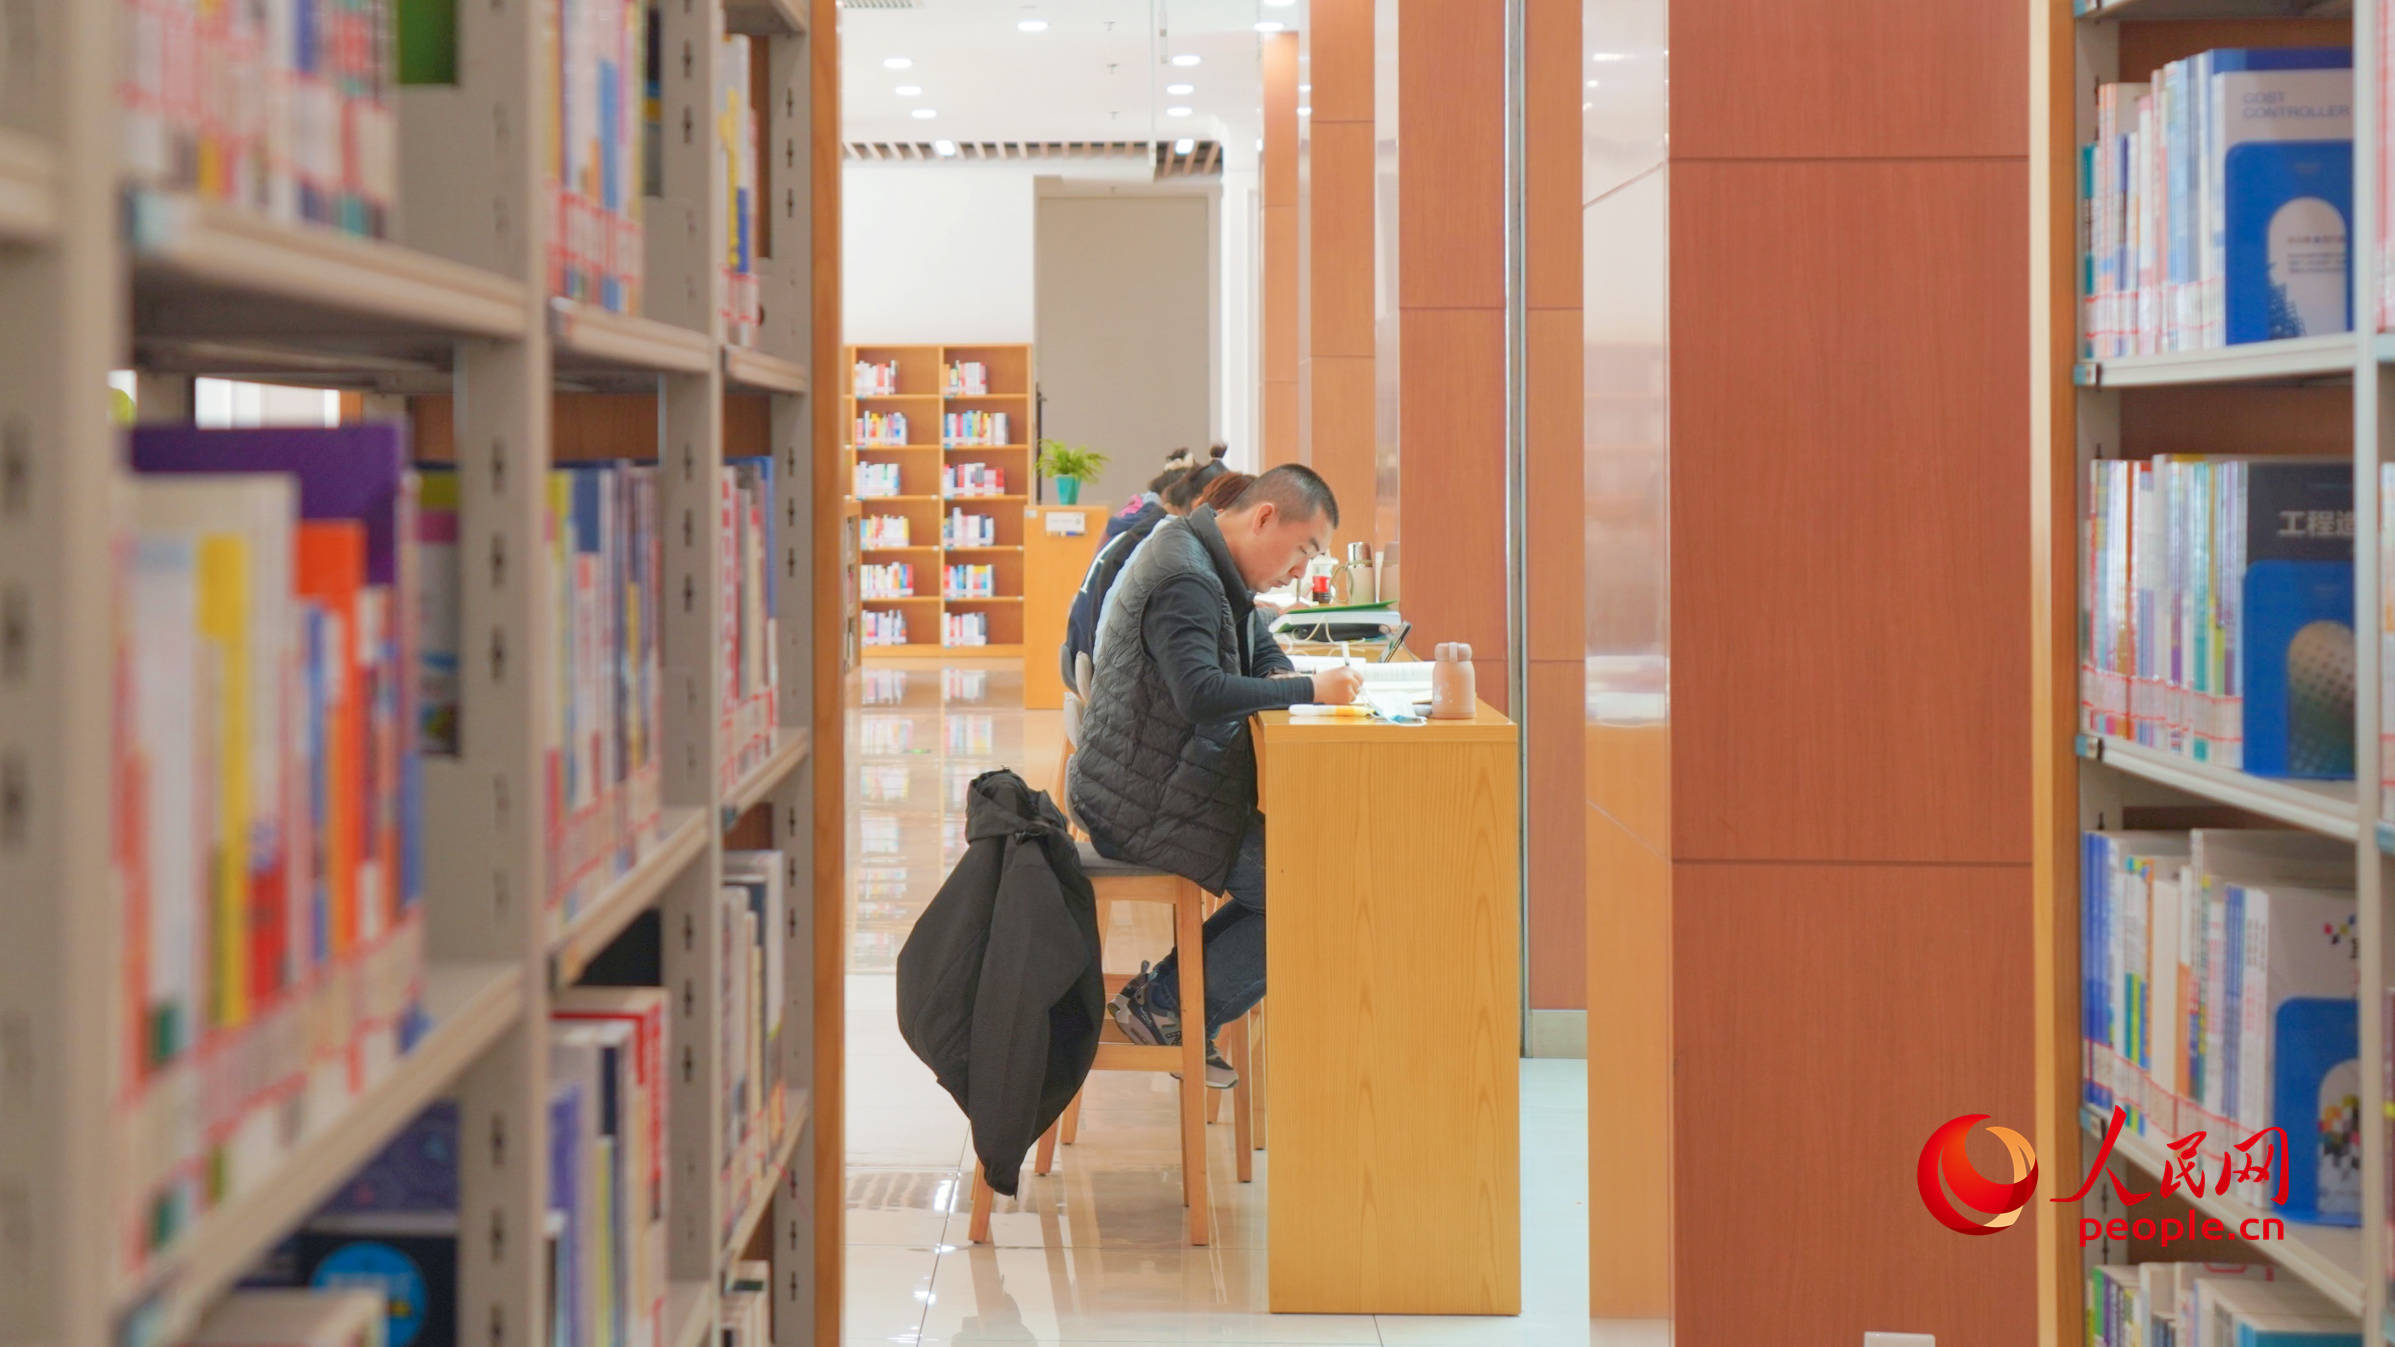 市民在圖書館看書學習。人民網 李龍攝